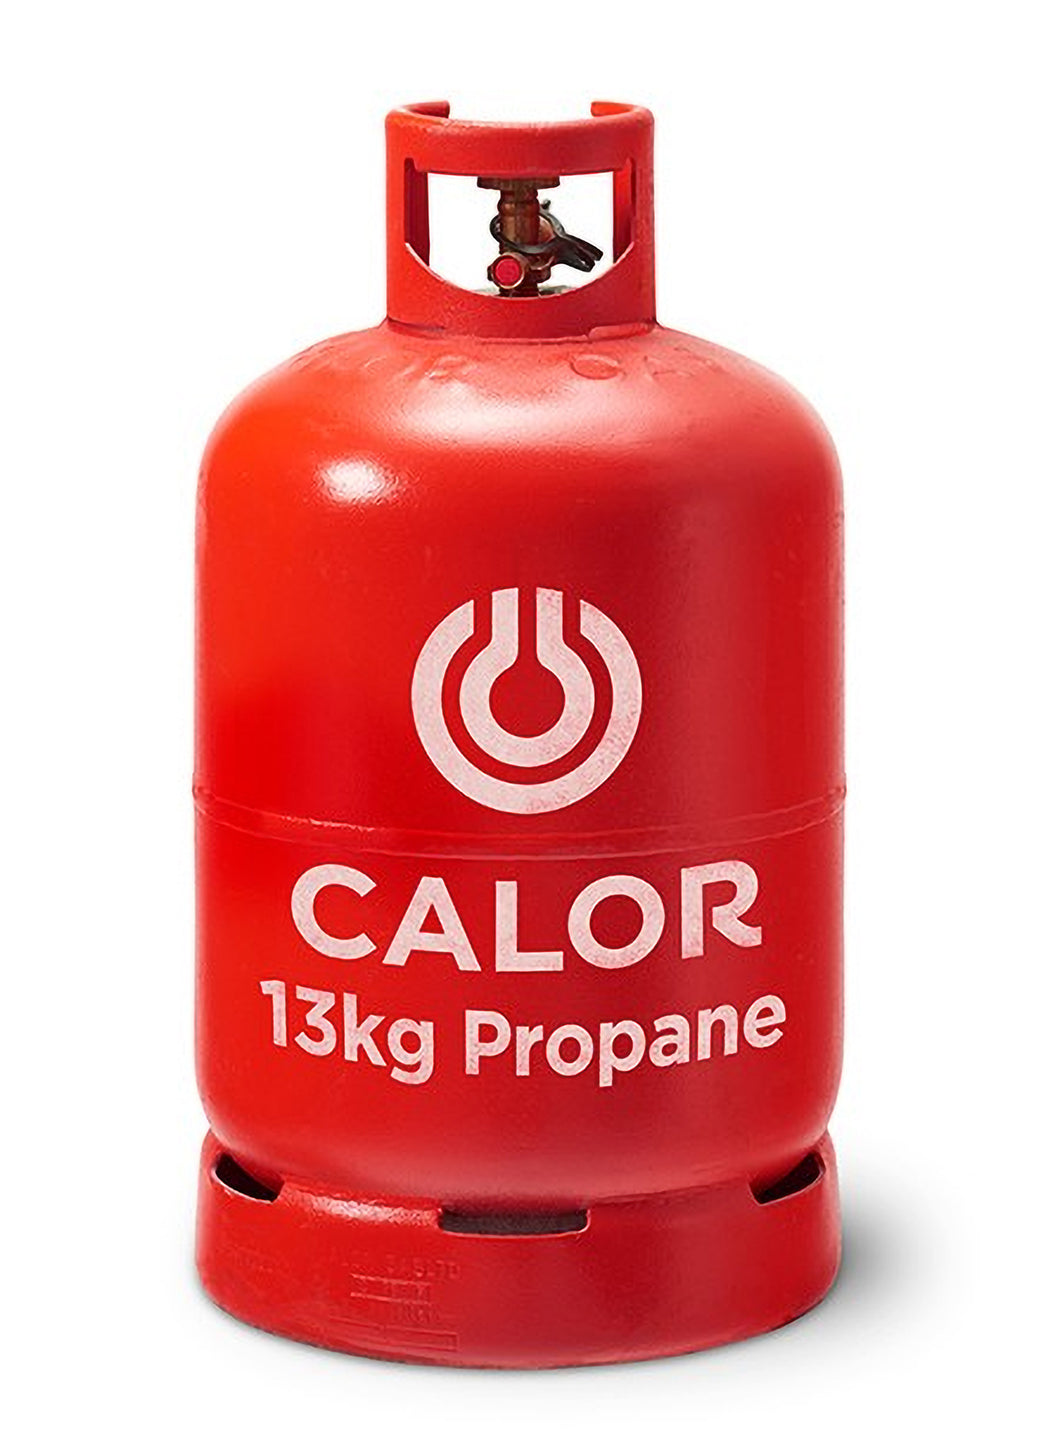 Calor 13kg Propane gas bottle